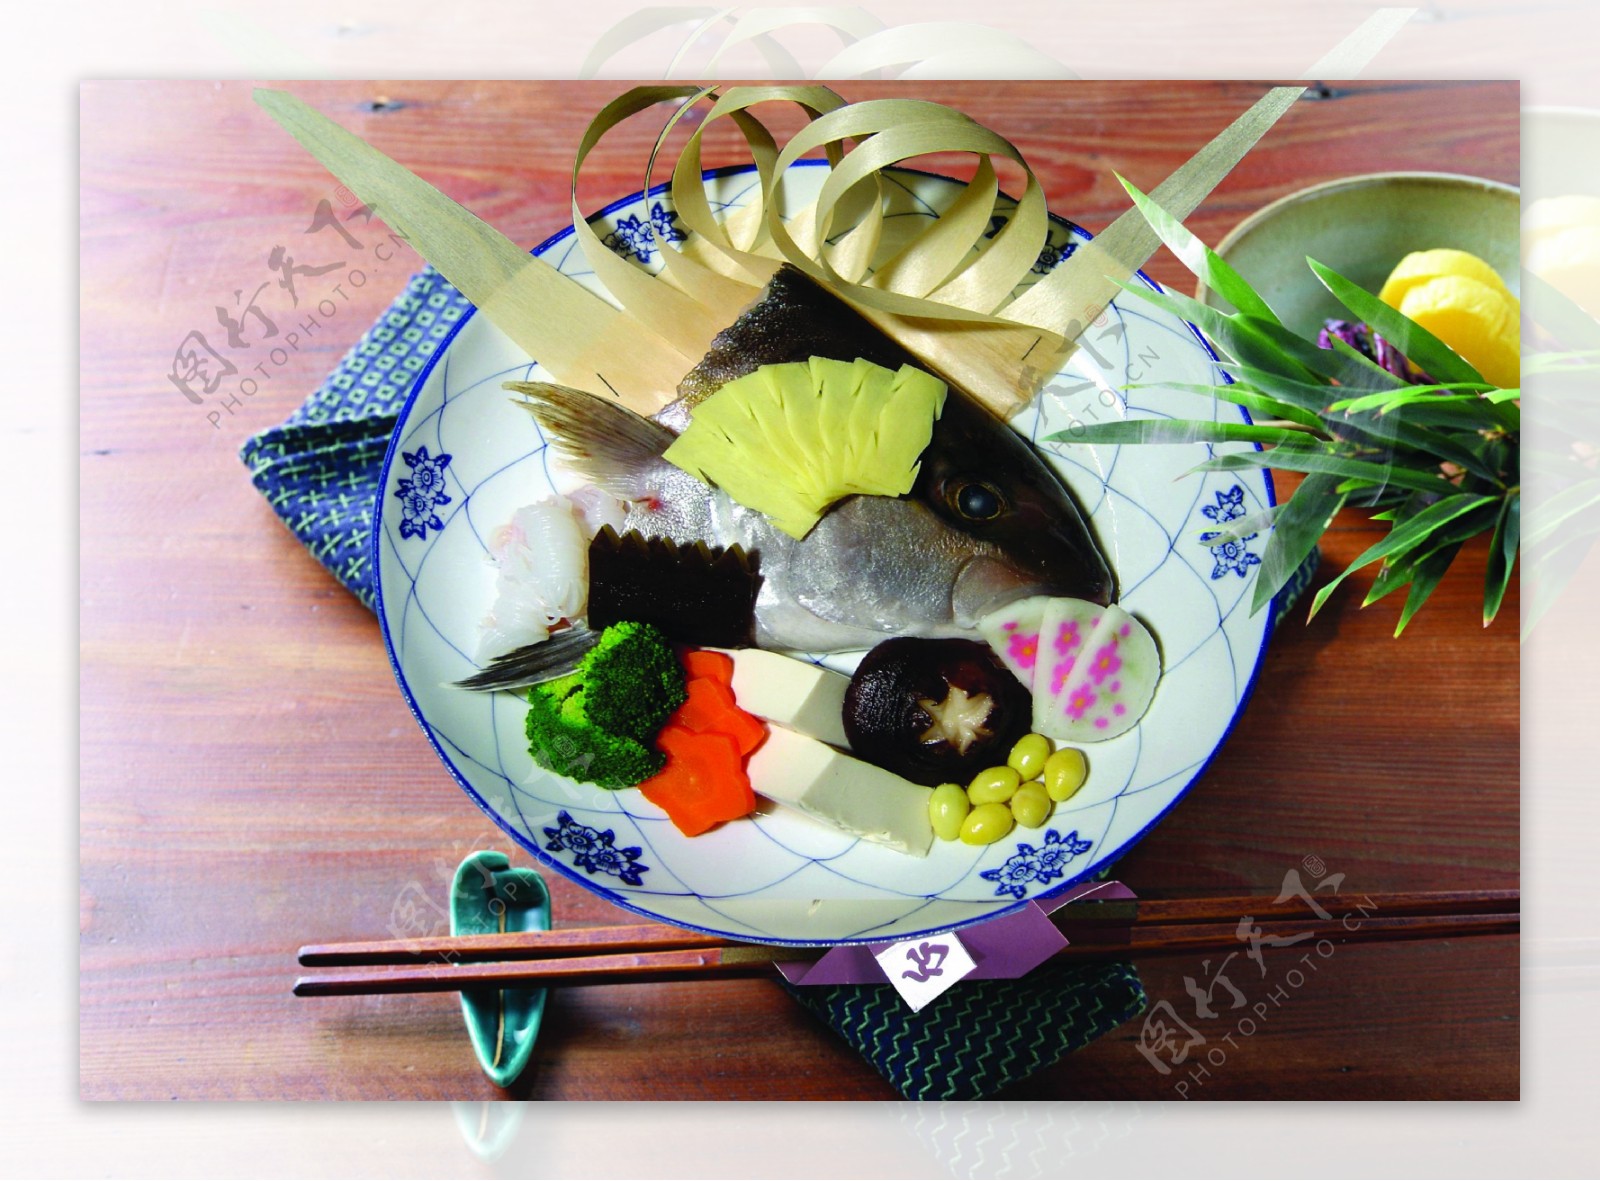 日本料理鱼头火锅拼盘图片